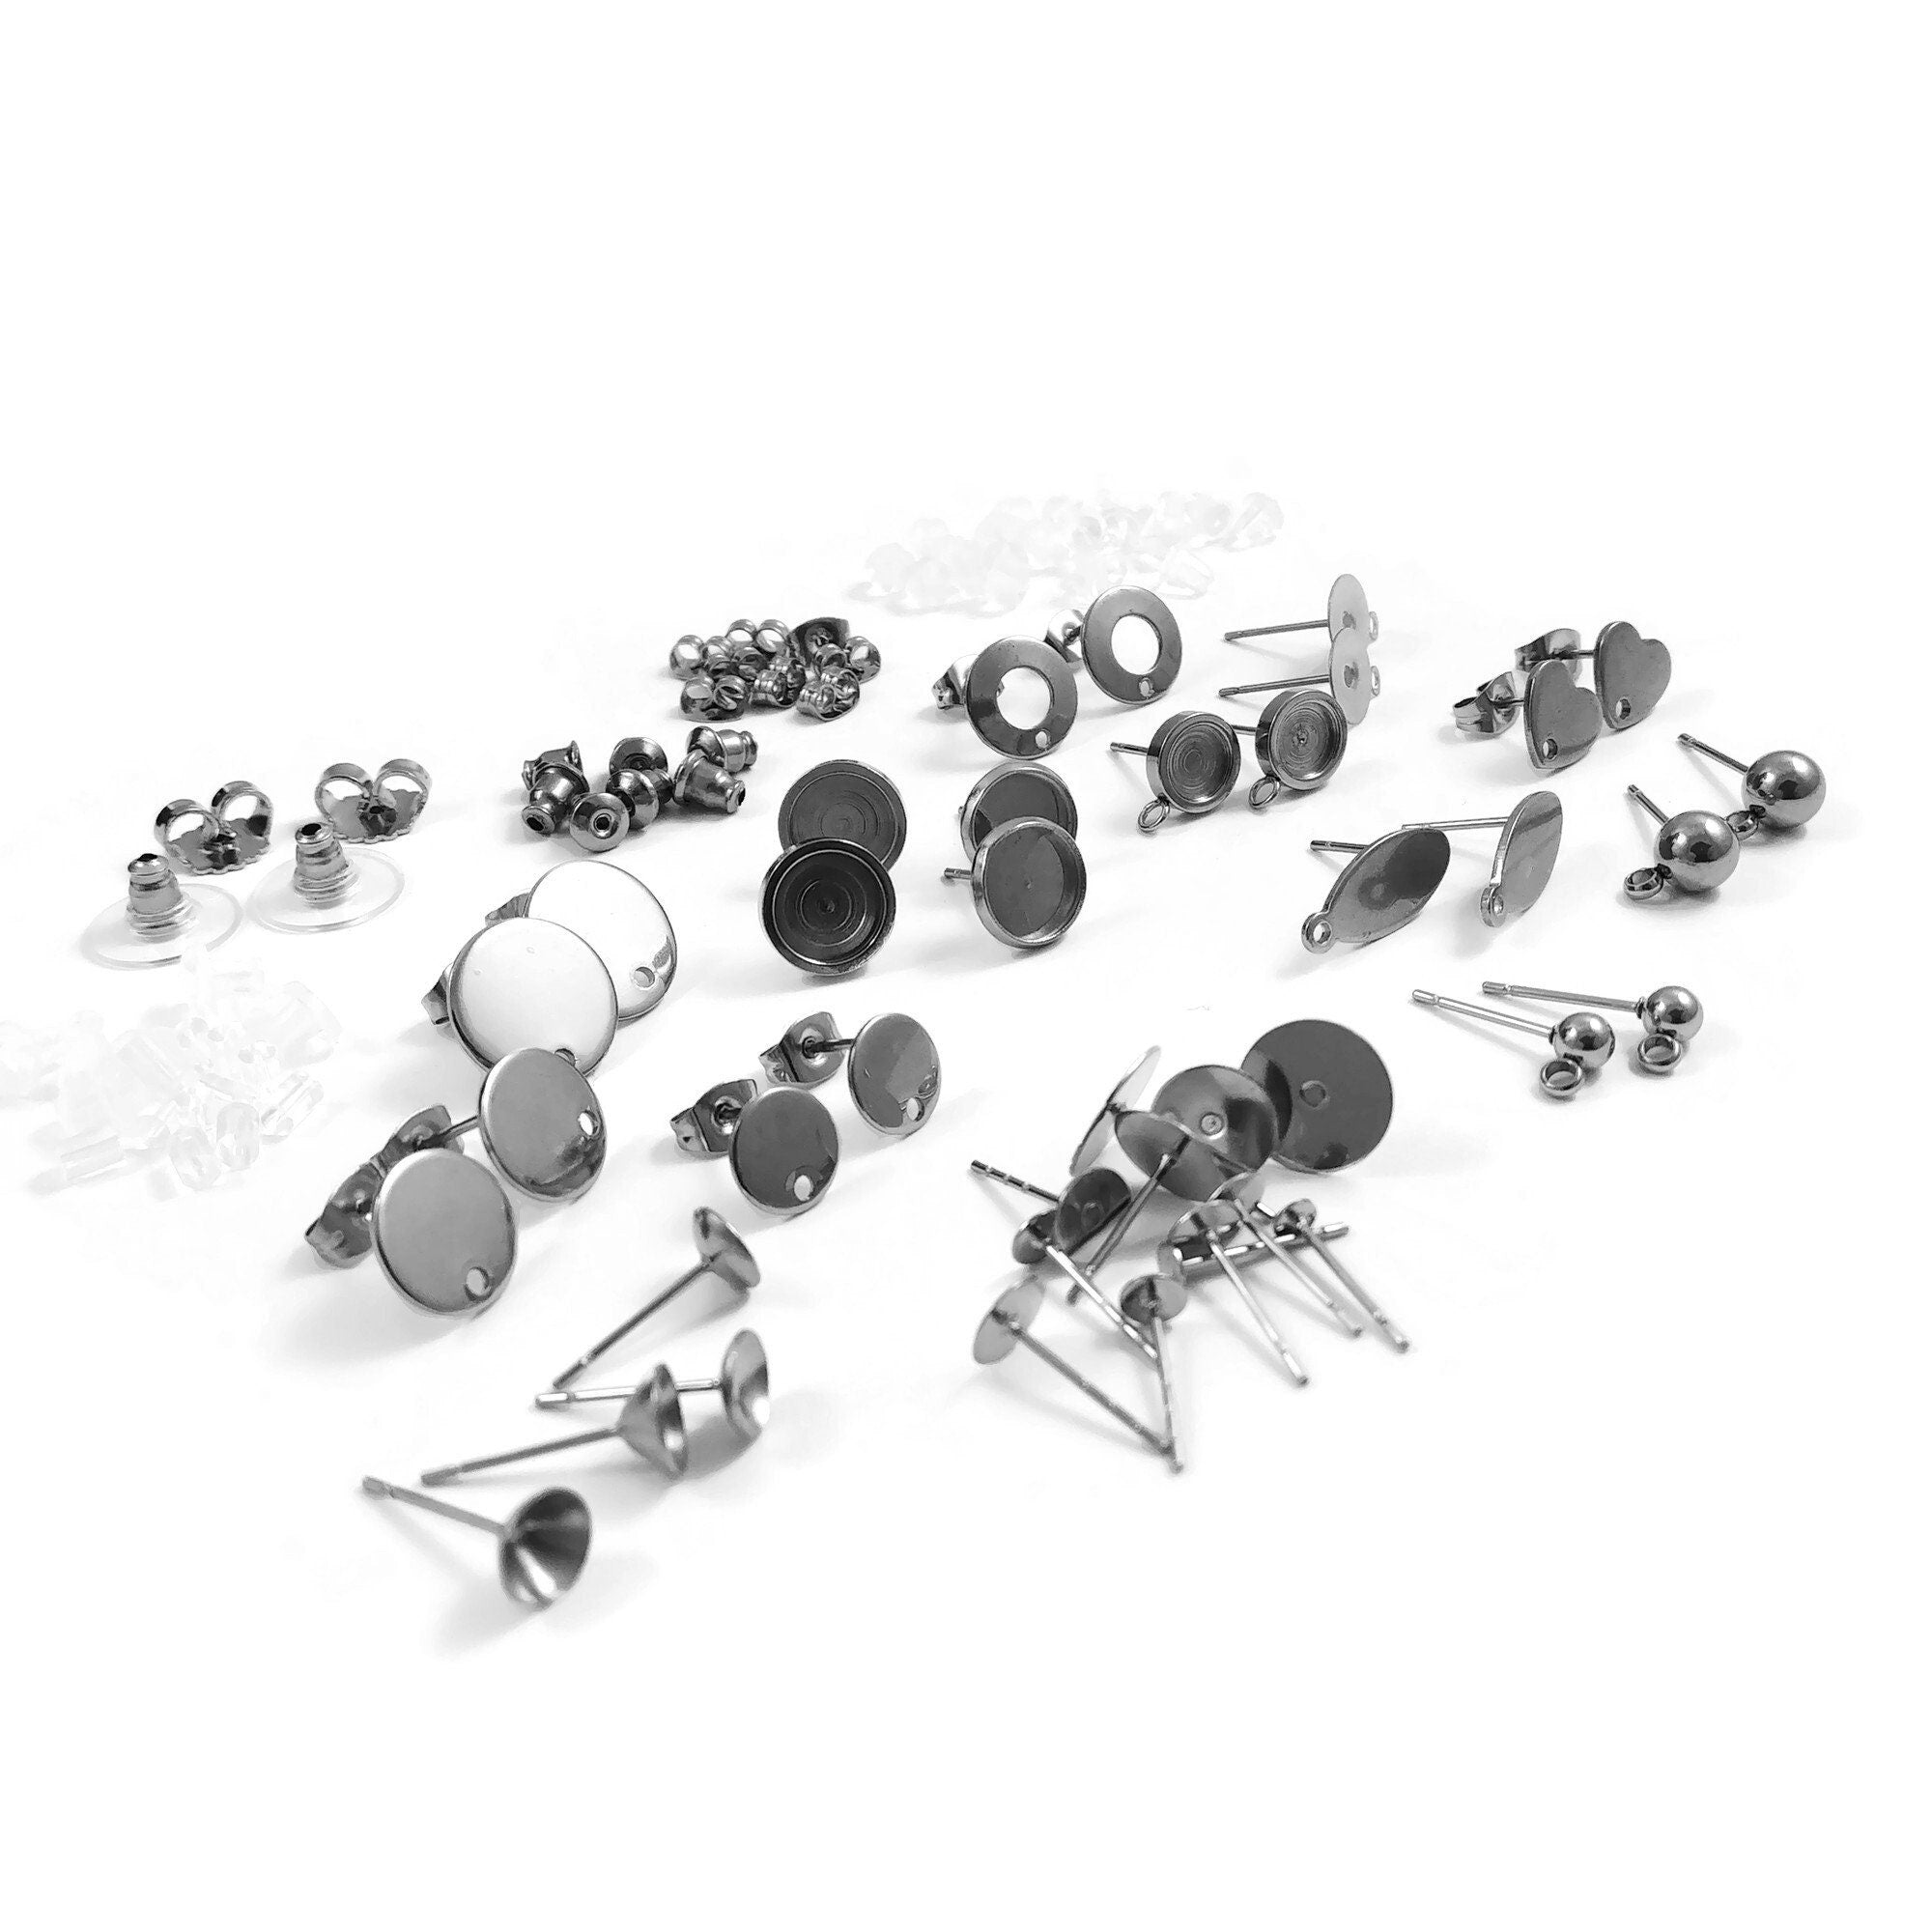 Earring making starter kit, Silver stainless steel posts, 60pcs sample